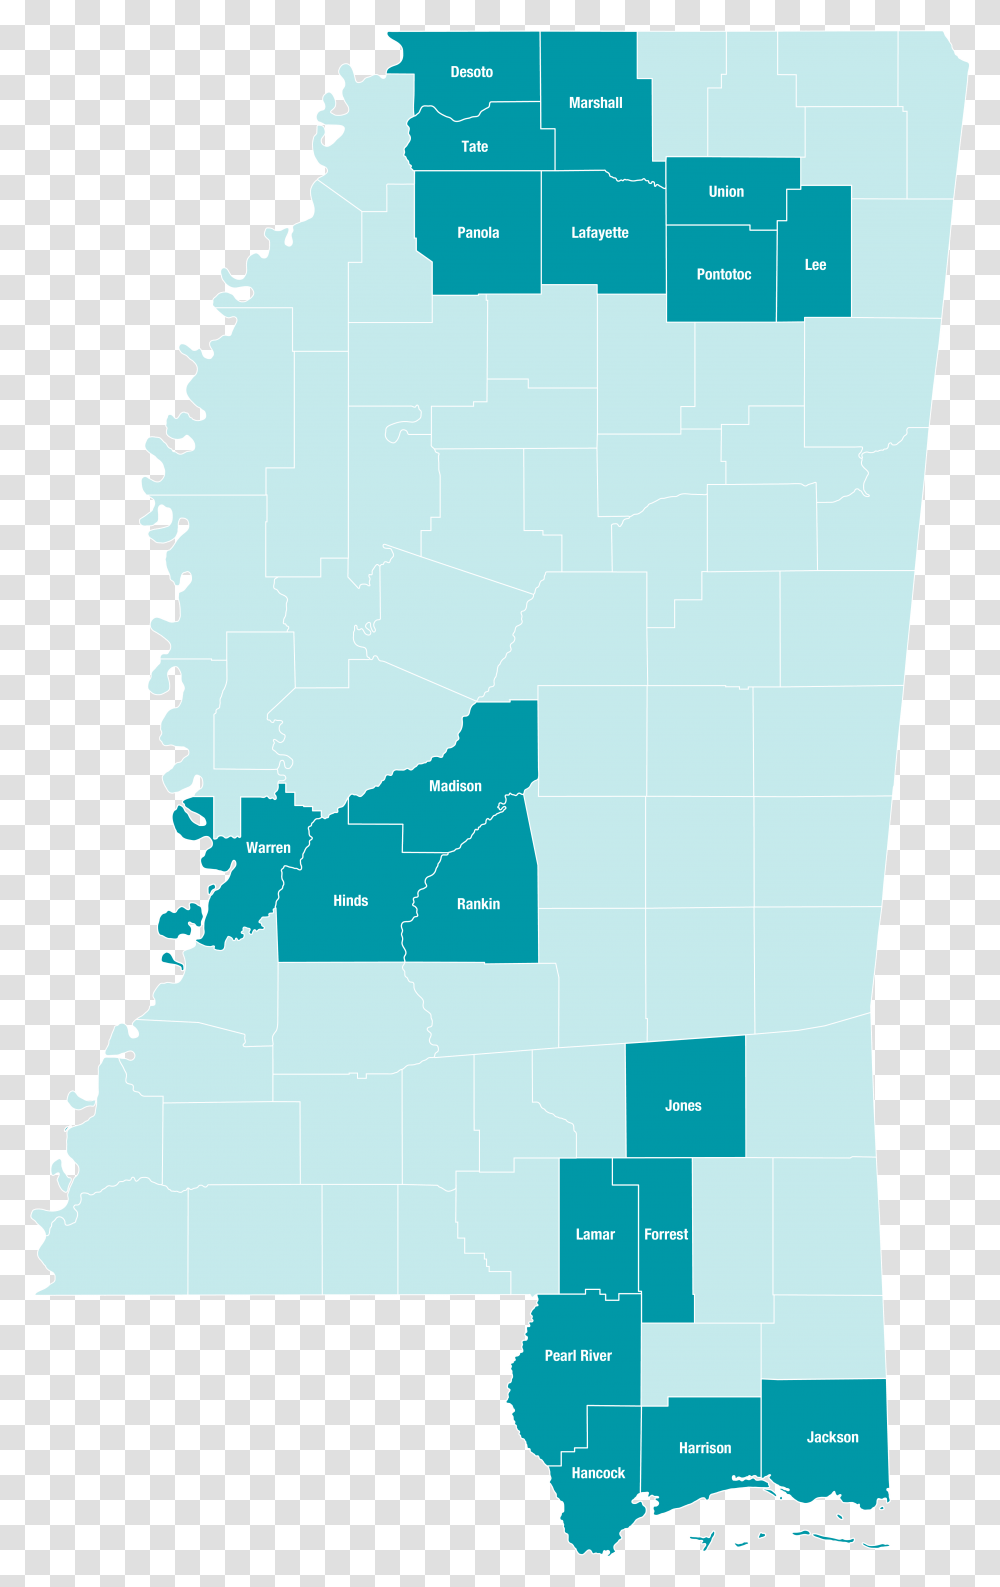 Mississippi Service Area Map Map Of Mississippi, Diagram, Plot, Atlas Transparent Png